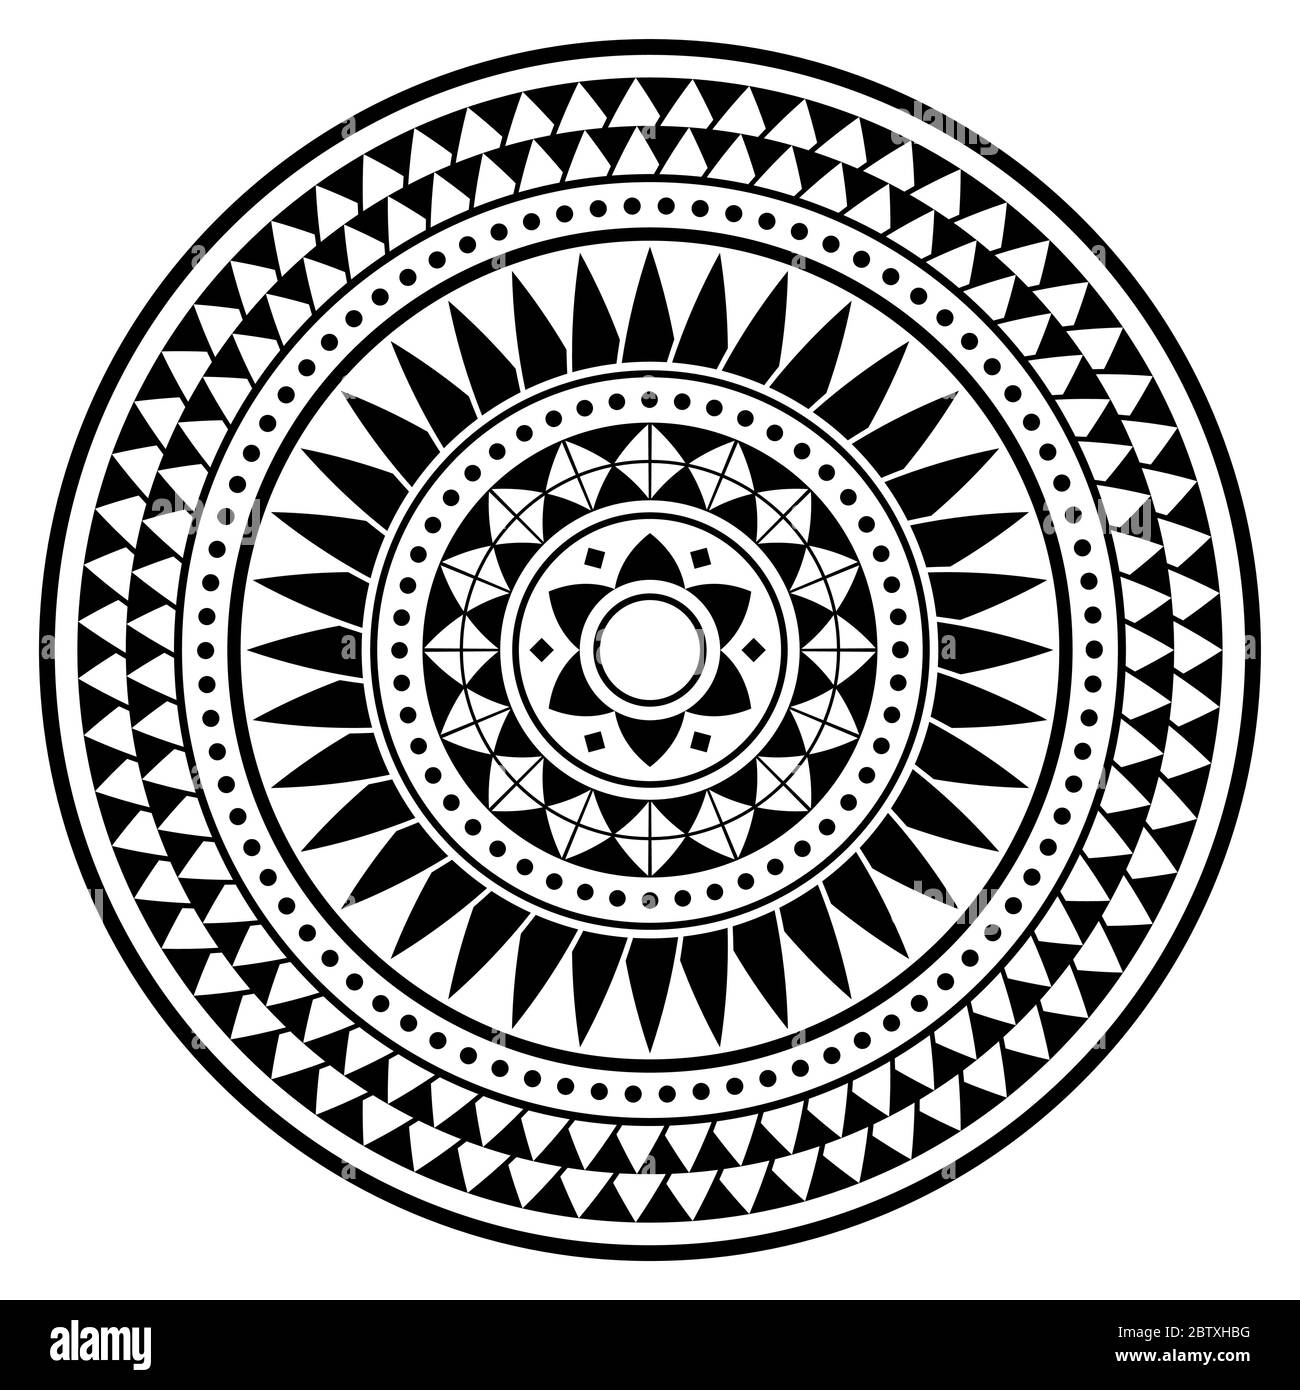 Tribal Polynesian Mandala Vektor Design, geometrisches hawaiianisches Tattoo Stil Muster in schwarz und weiß Stock Vektor